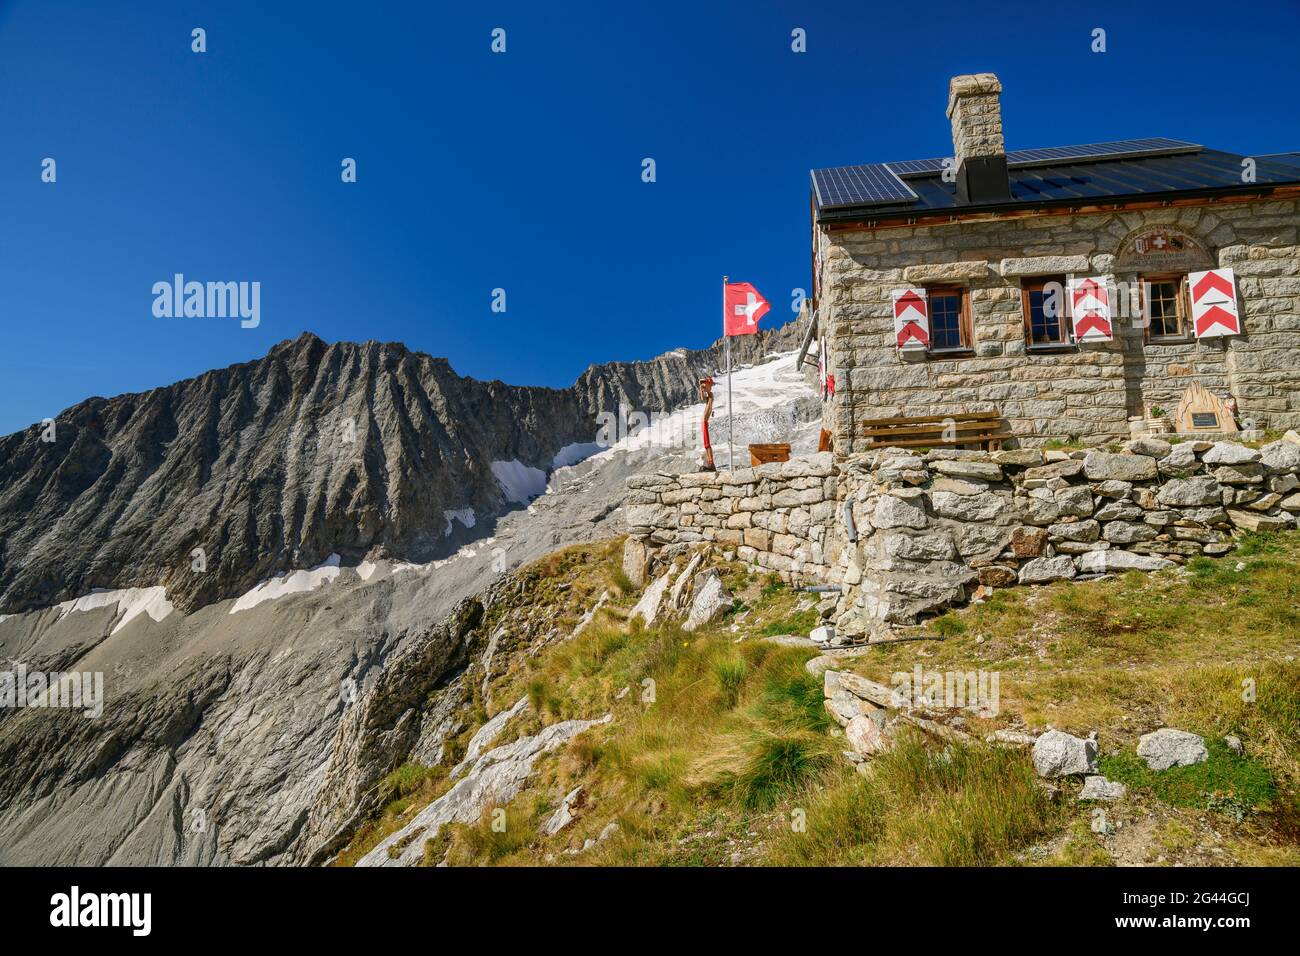 Hut Baltschiederklause with Swiss flag, Baltschiederklause, Bernese Alps, Valais, Switzerland Stock Photo